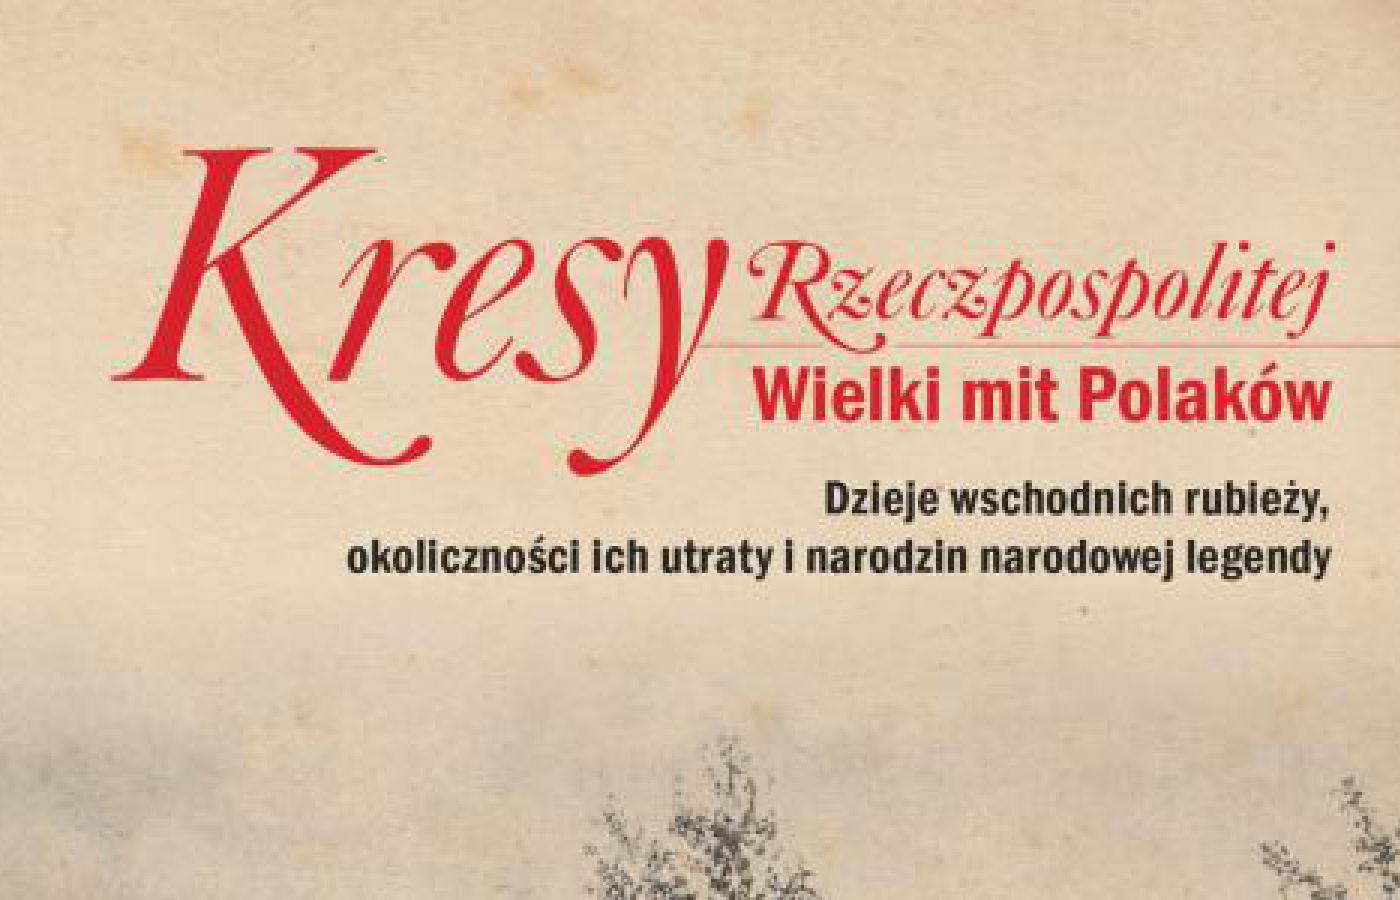 „Kresy Rzeczpospolitej. Wielki mit Polaków”